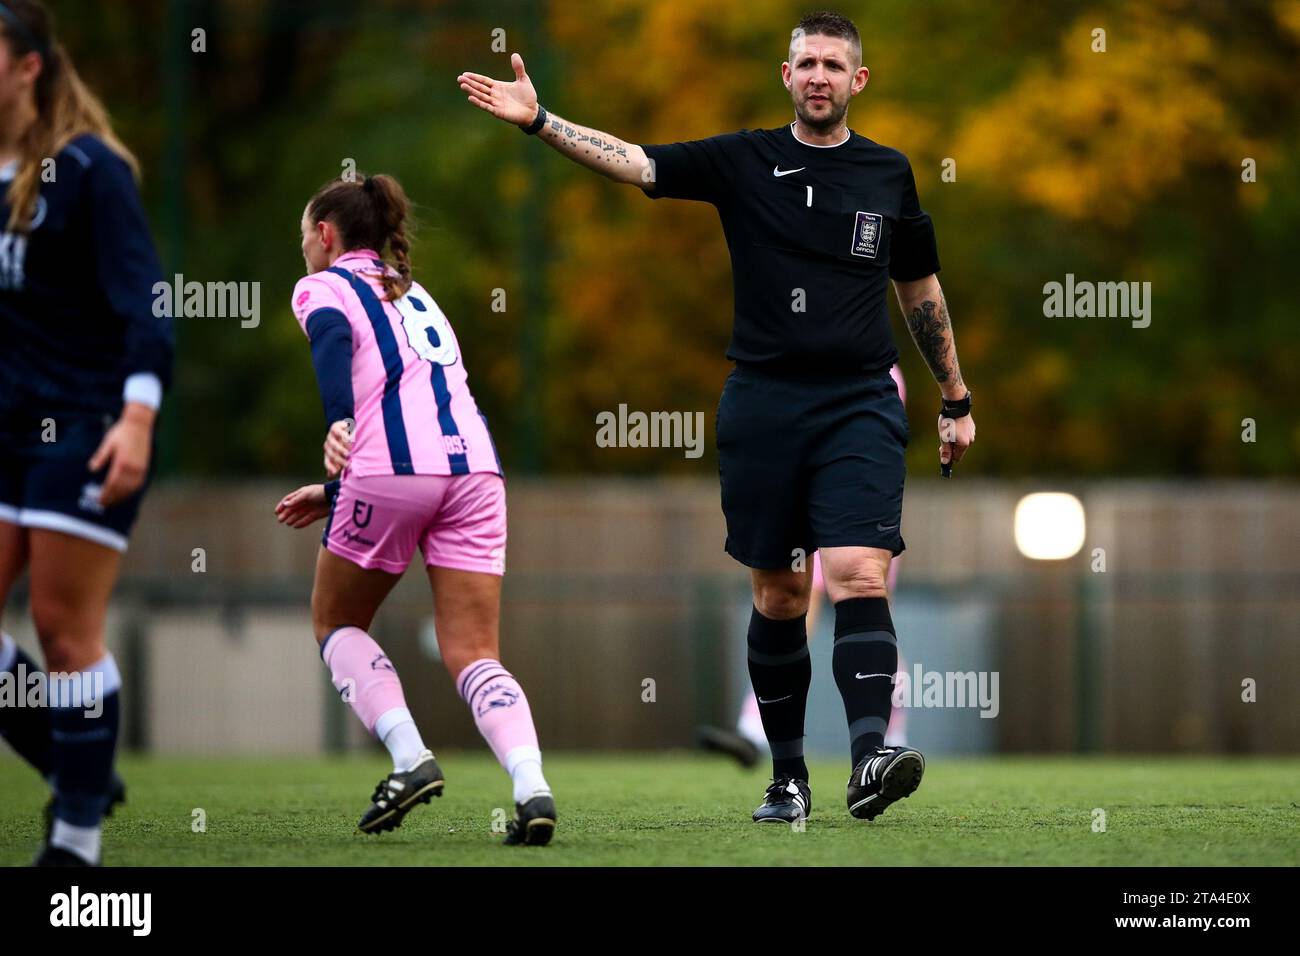 Un arbitre masculin signale un coup franc pendant un match de football féminin Banque D'Images